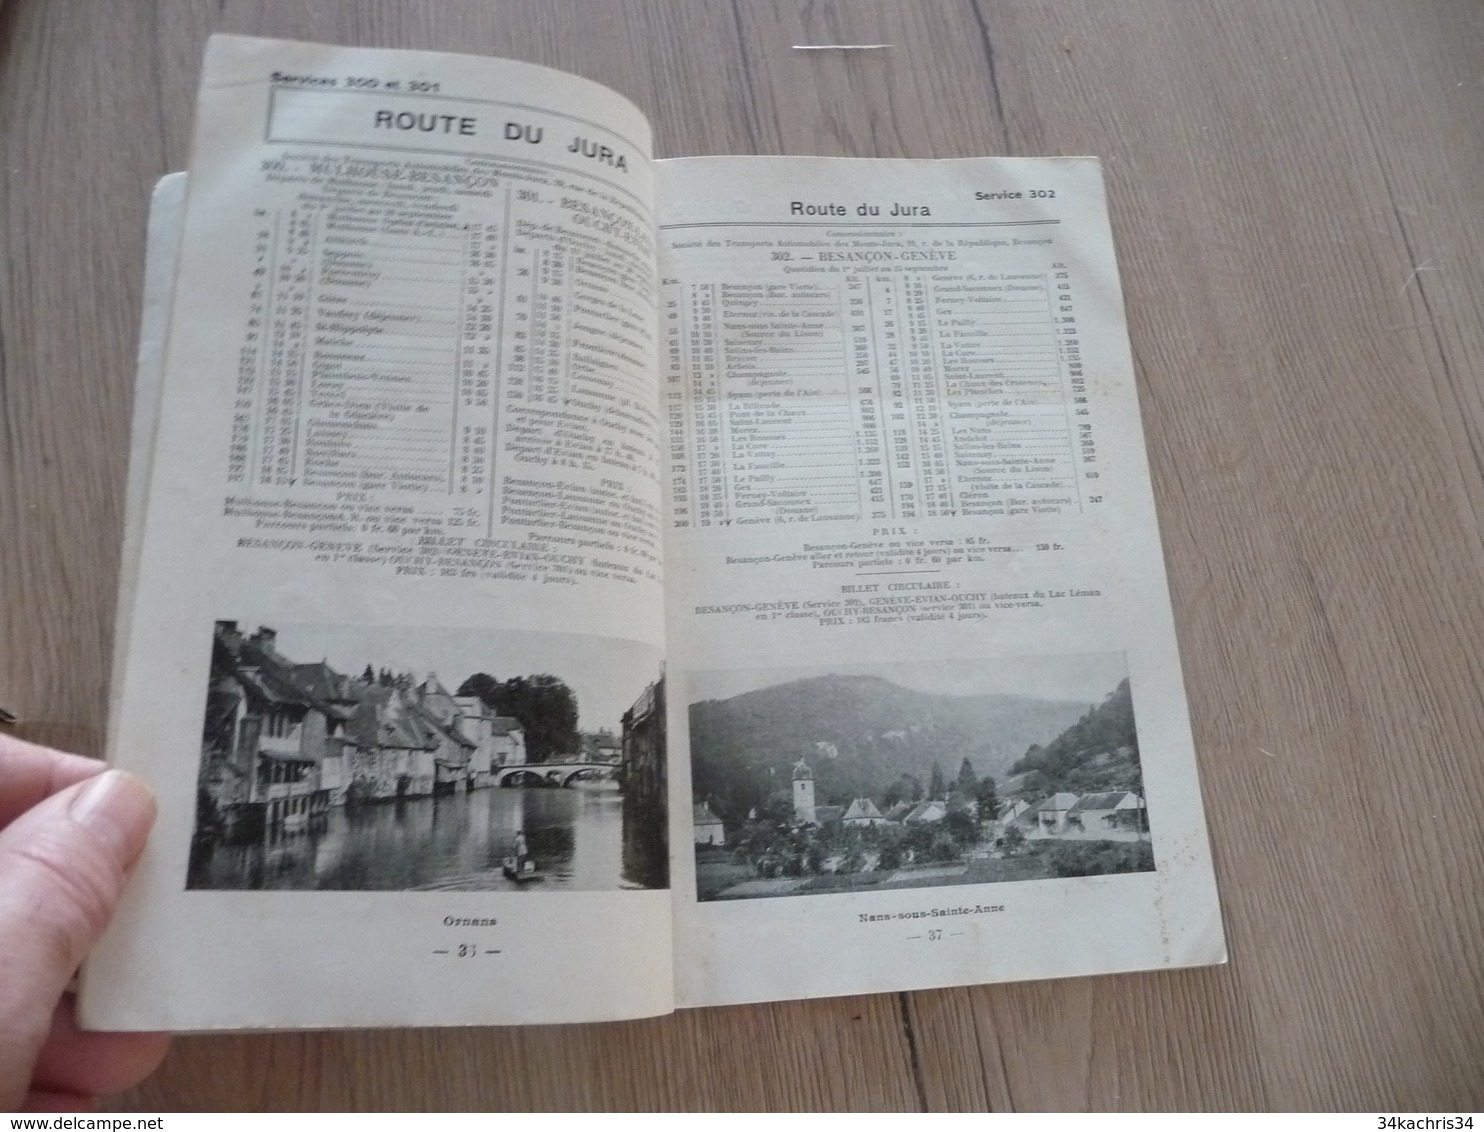 Livret Horaire Autocars bus PLM été 1929 France Corse 104 pages textes photos cartes état voir photos